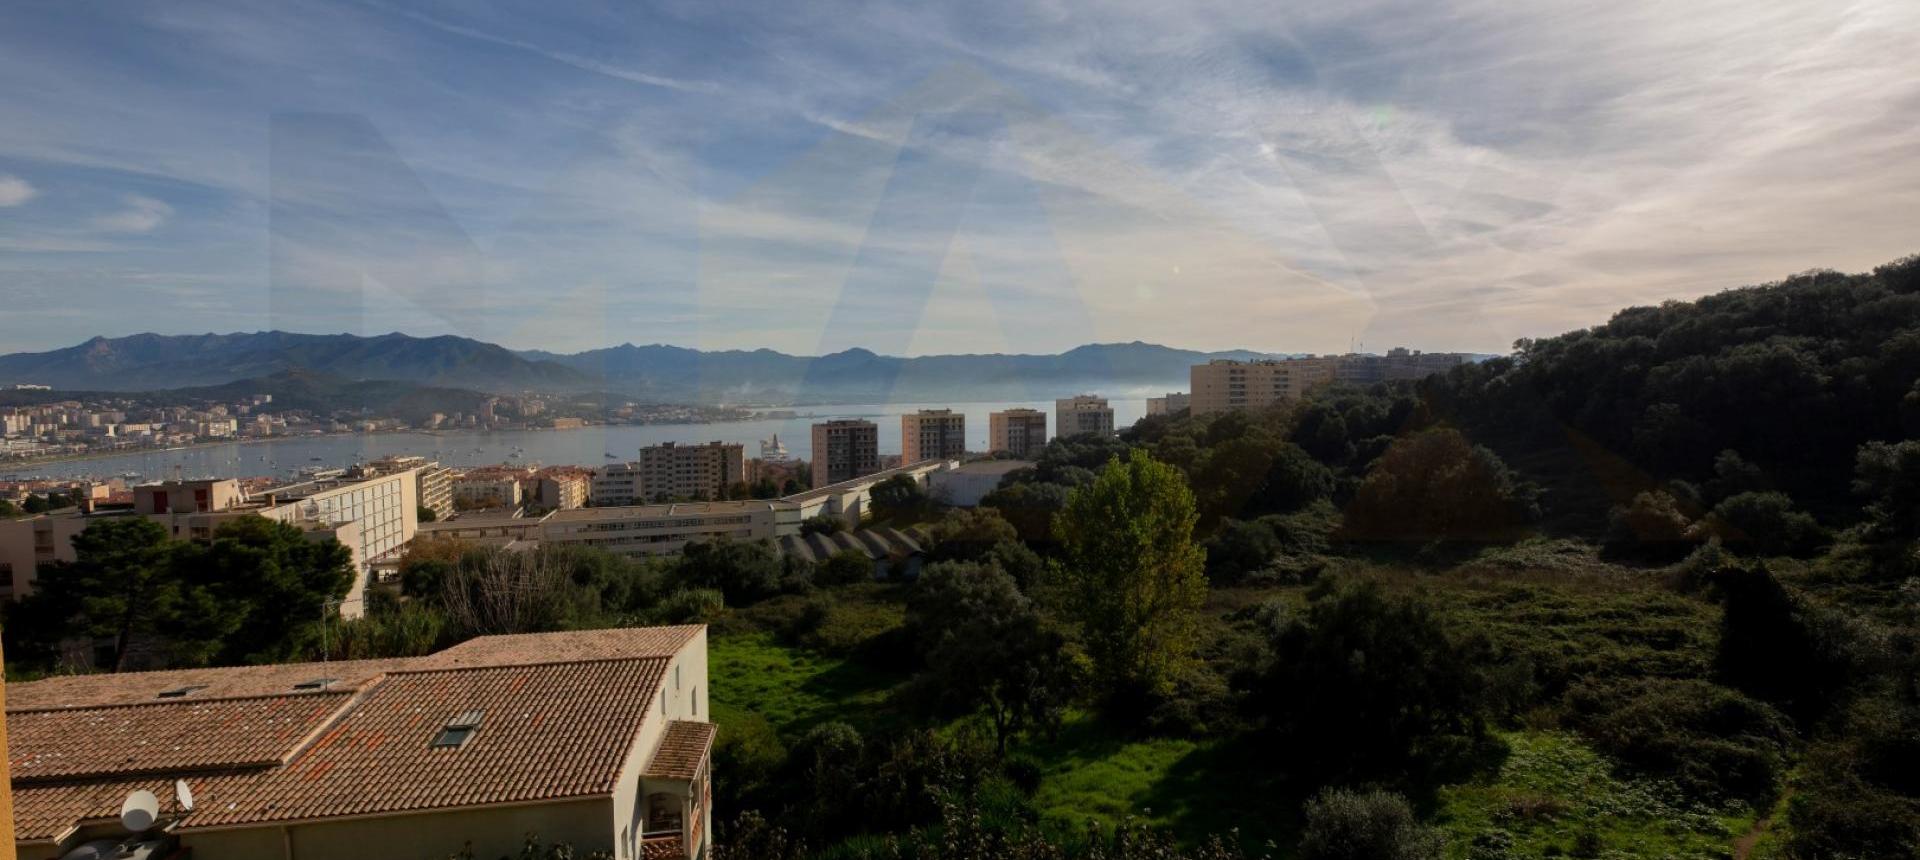 En Corse, à Ajaccio, un appartement de type F4 dans le secteur du lycée Laeticia.